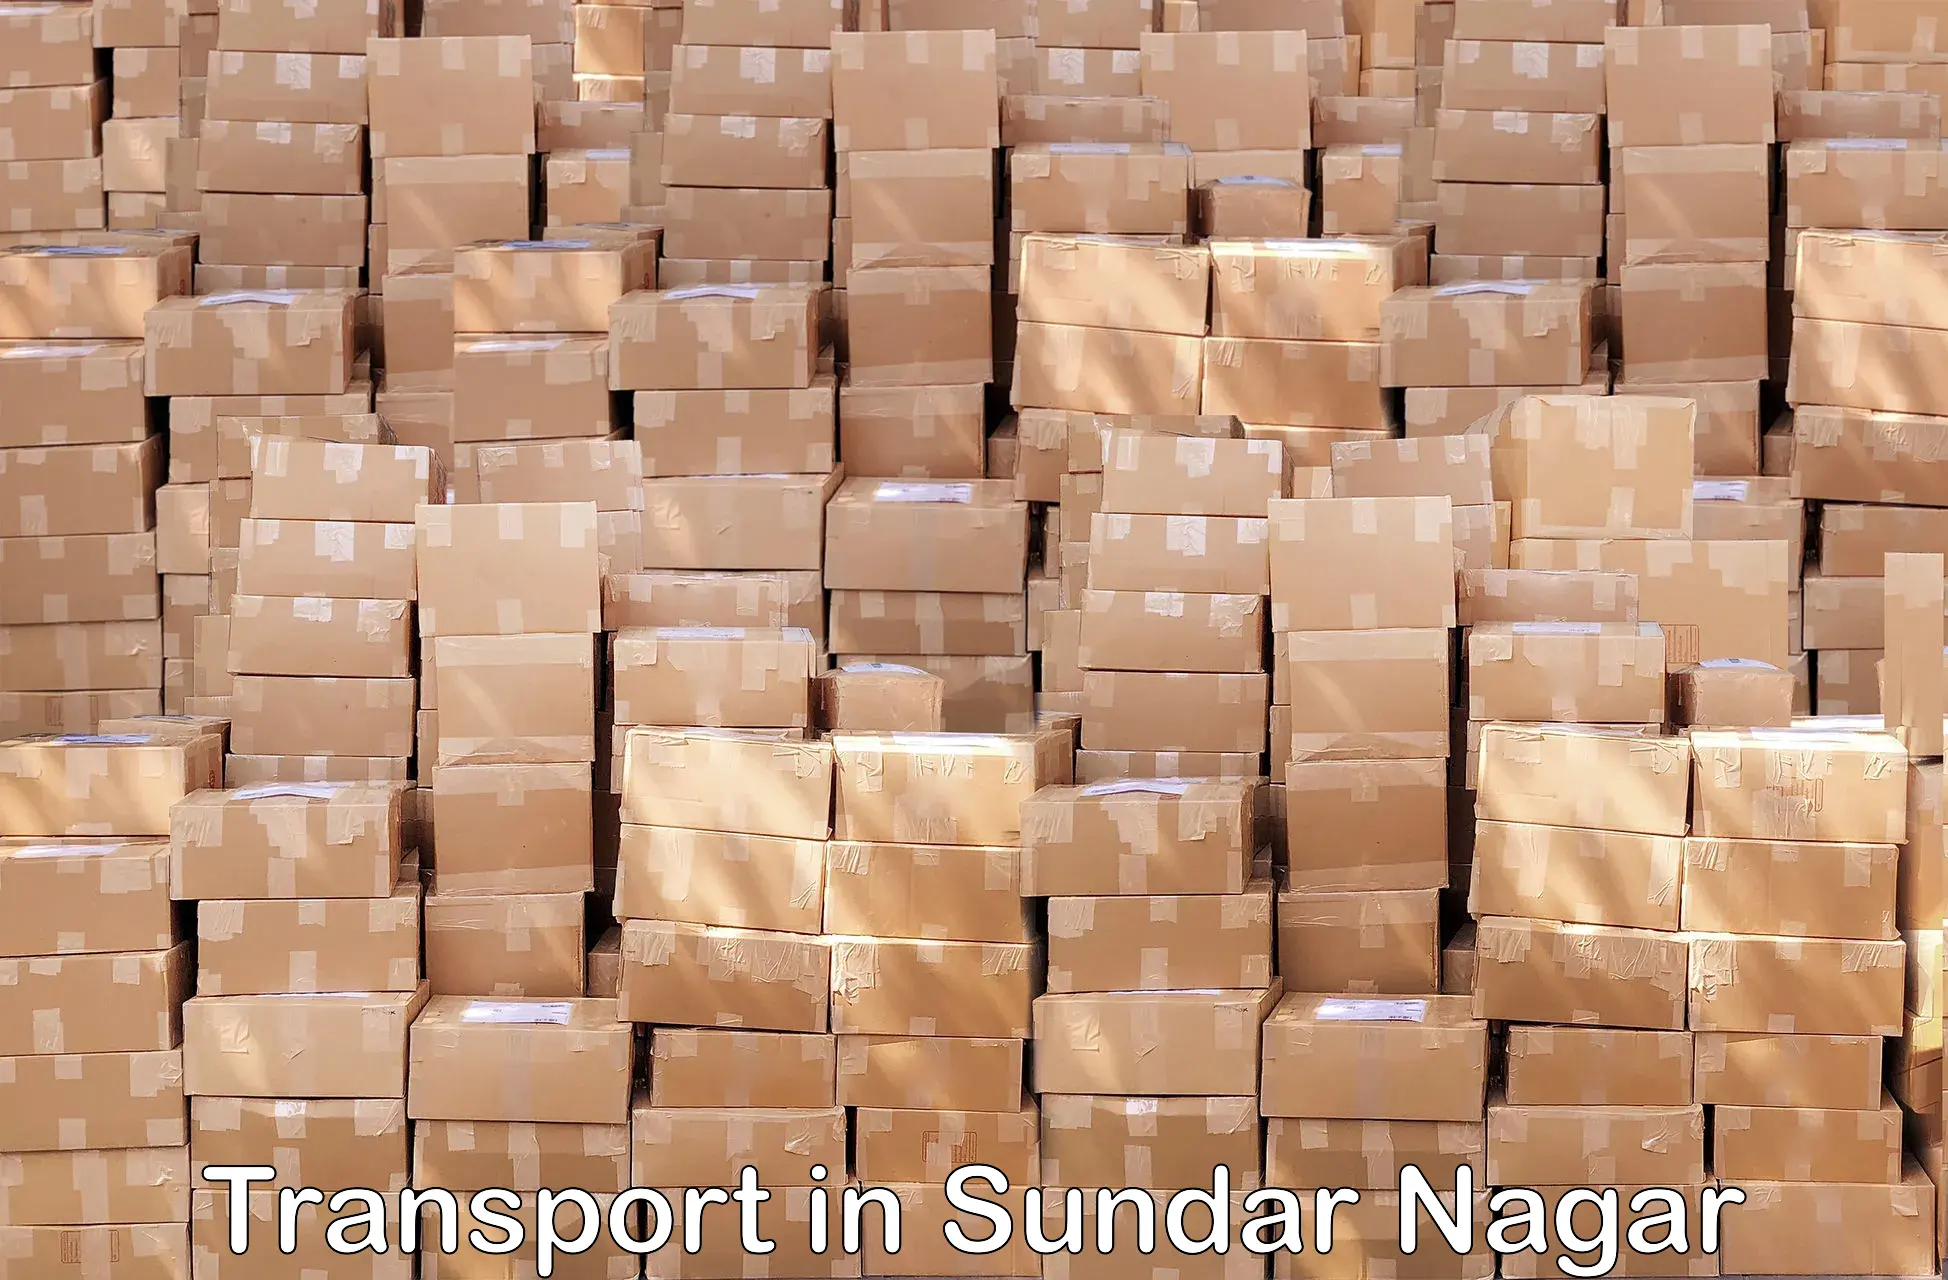 Container transportation services in Sundar Nagar